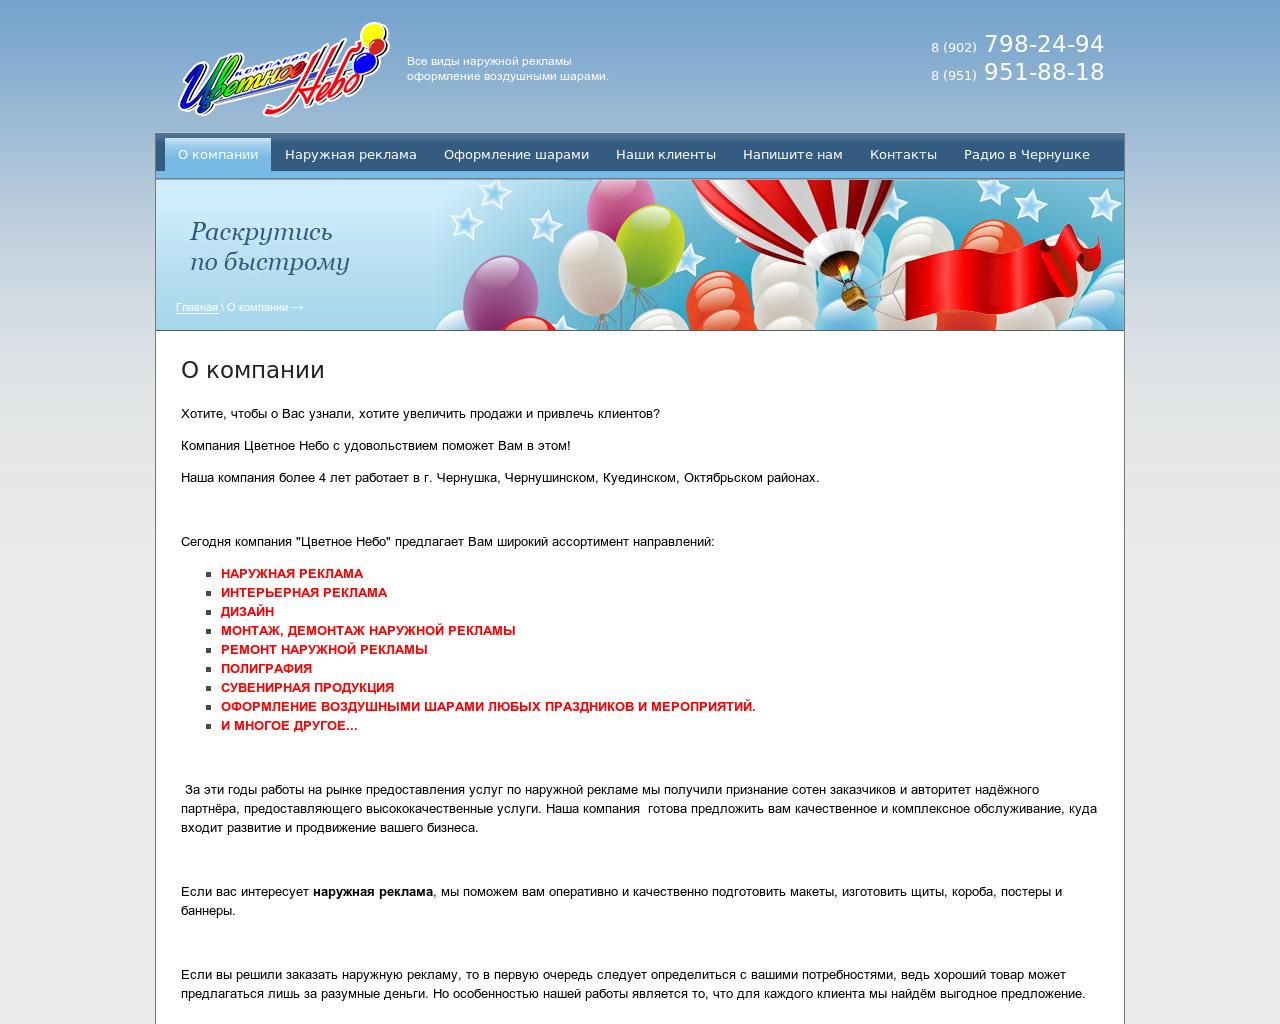 Изображение сайта cvetnoe-nebo.ru в разрешении 1280x1024